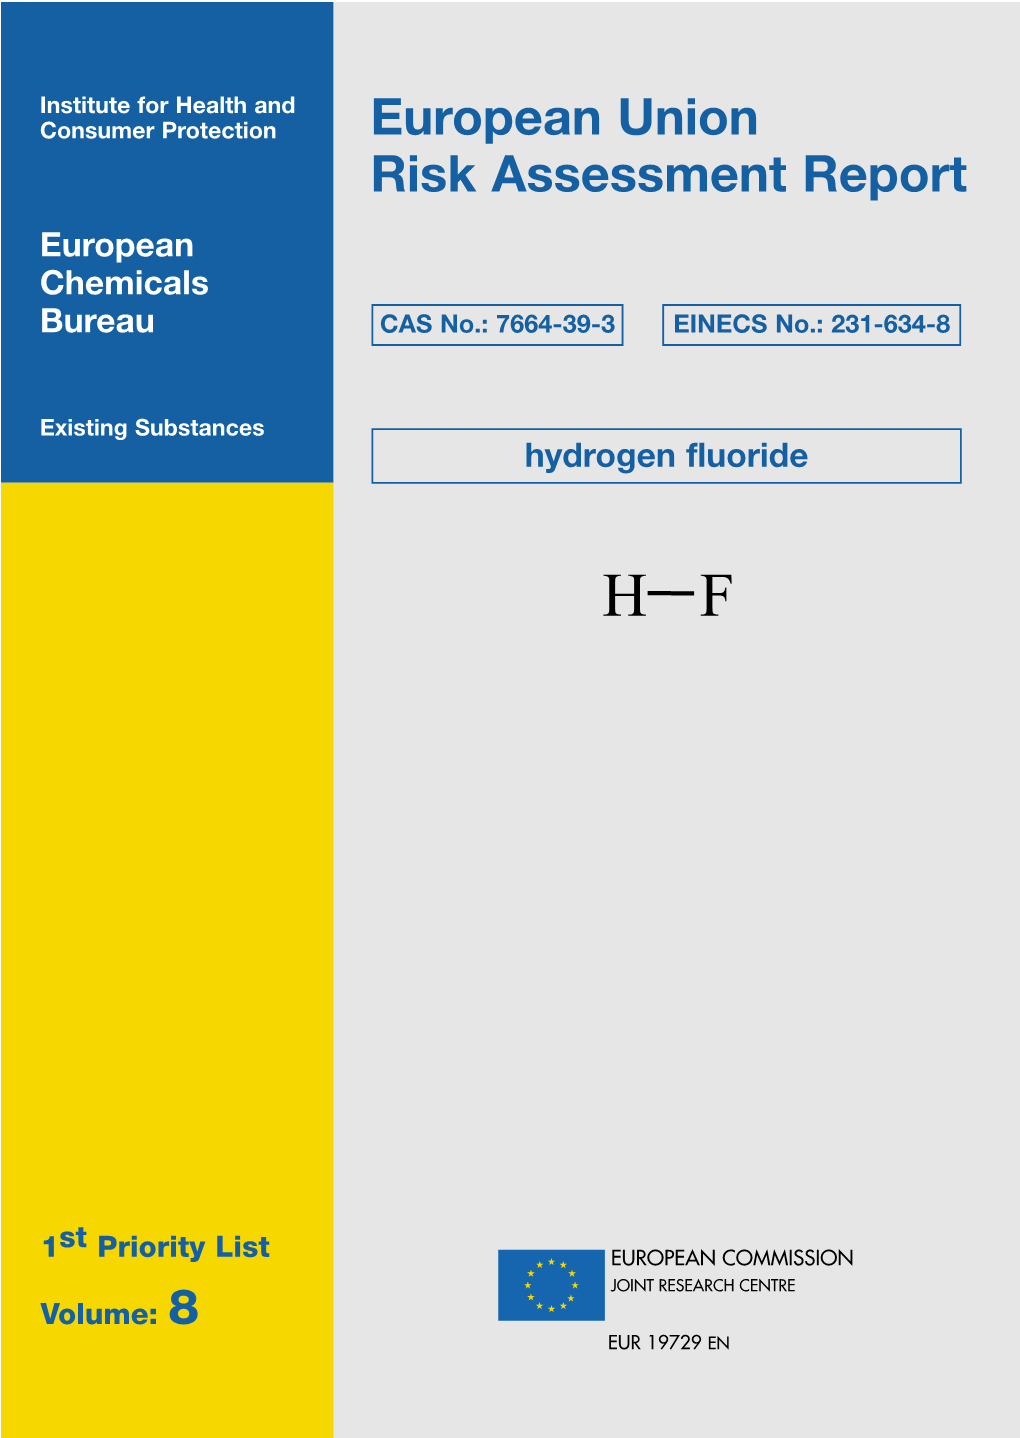 European Union Risk Assessment Report European Chemicals Bureau CAS No.: 7664-39-3 EINECS No.: 231-634-8